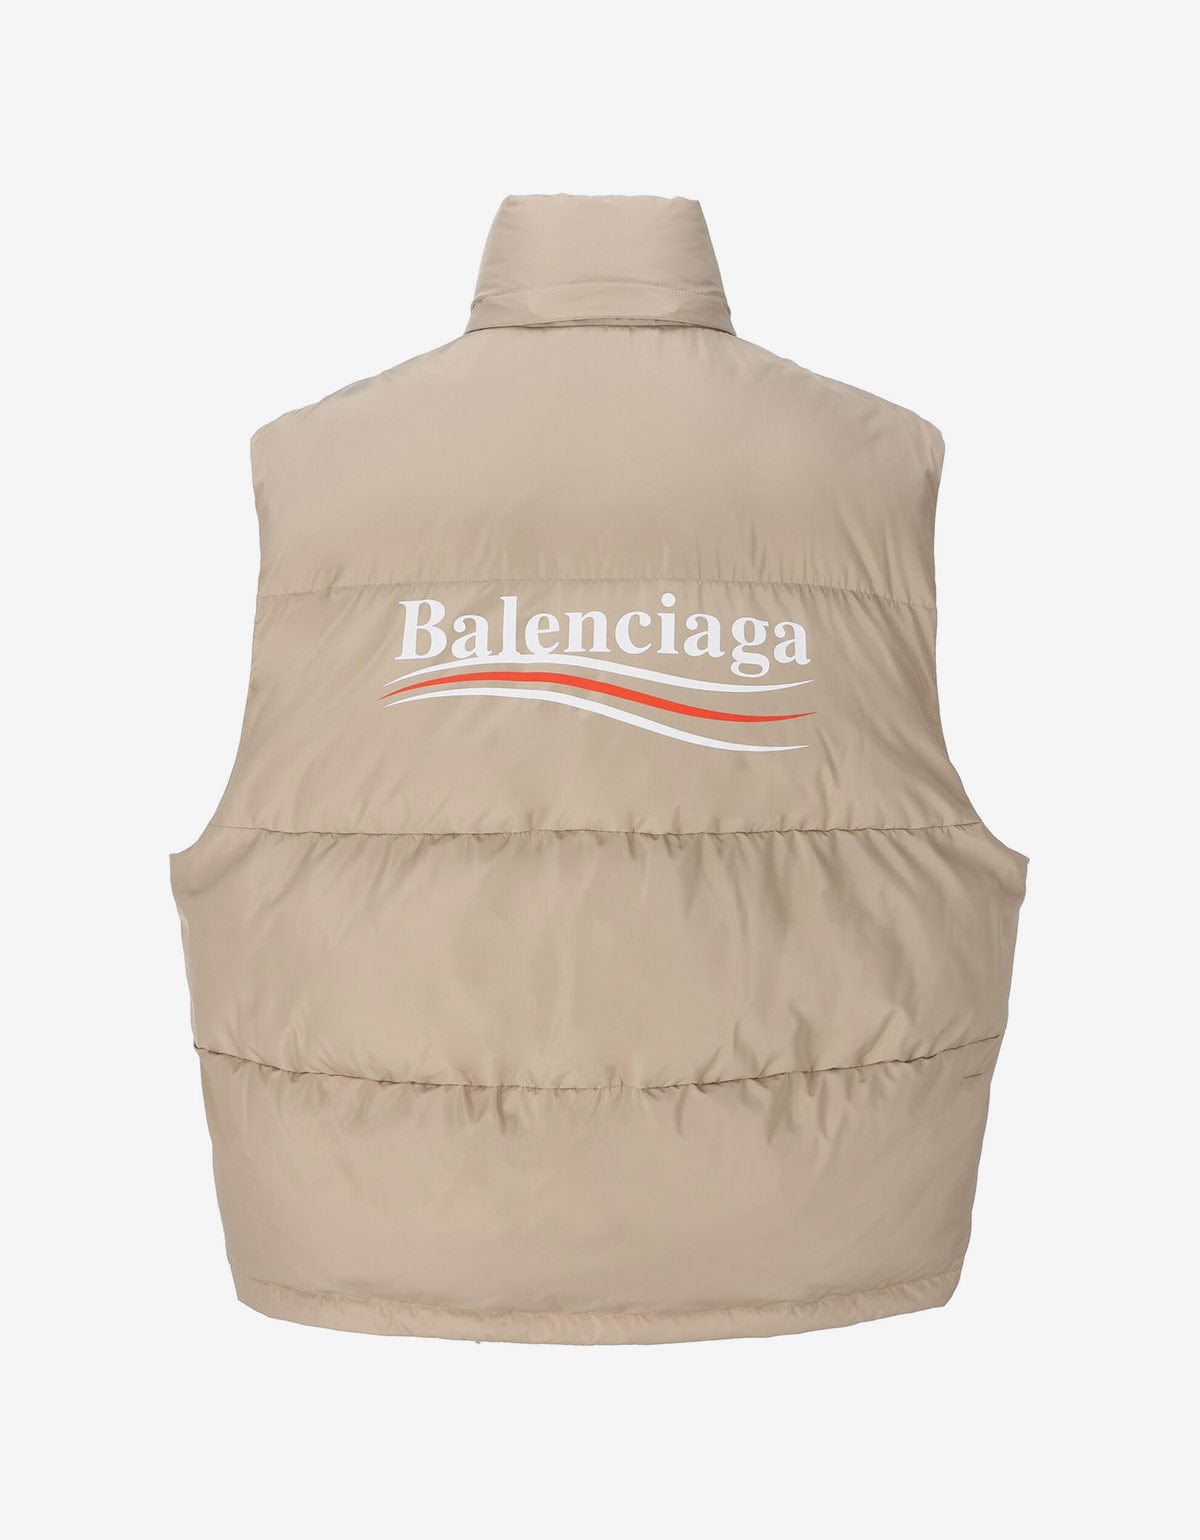 Balenciaga Balenciaga Beige Political Campaign Cocoon Puffer Gilet